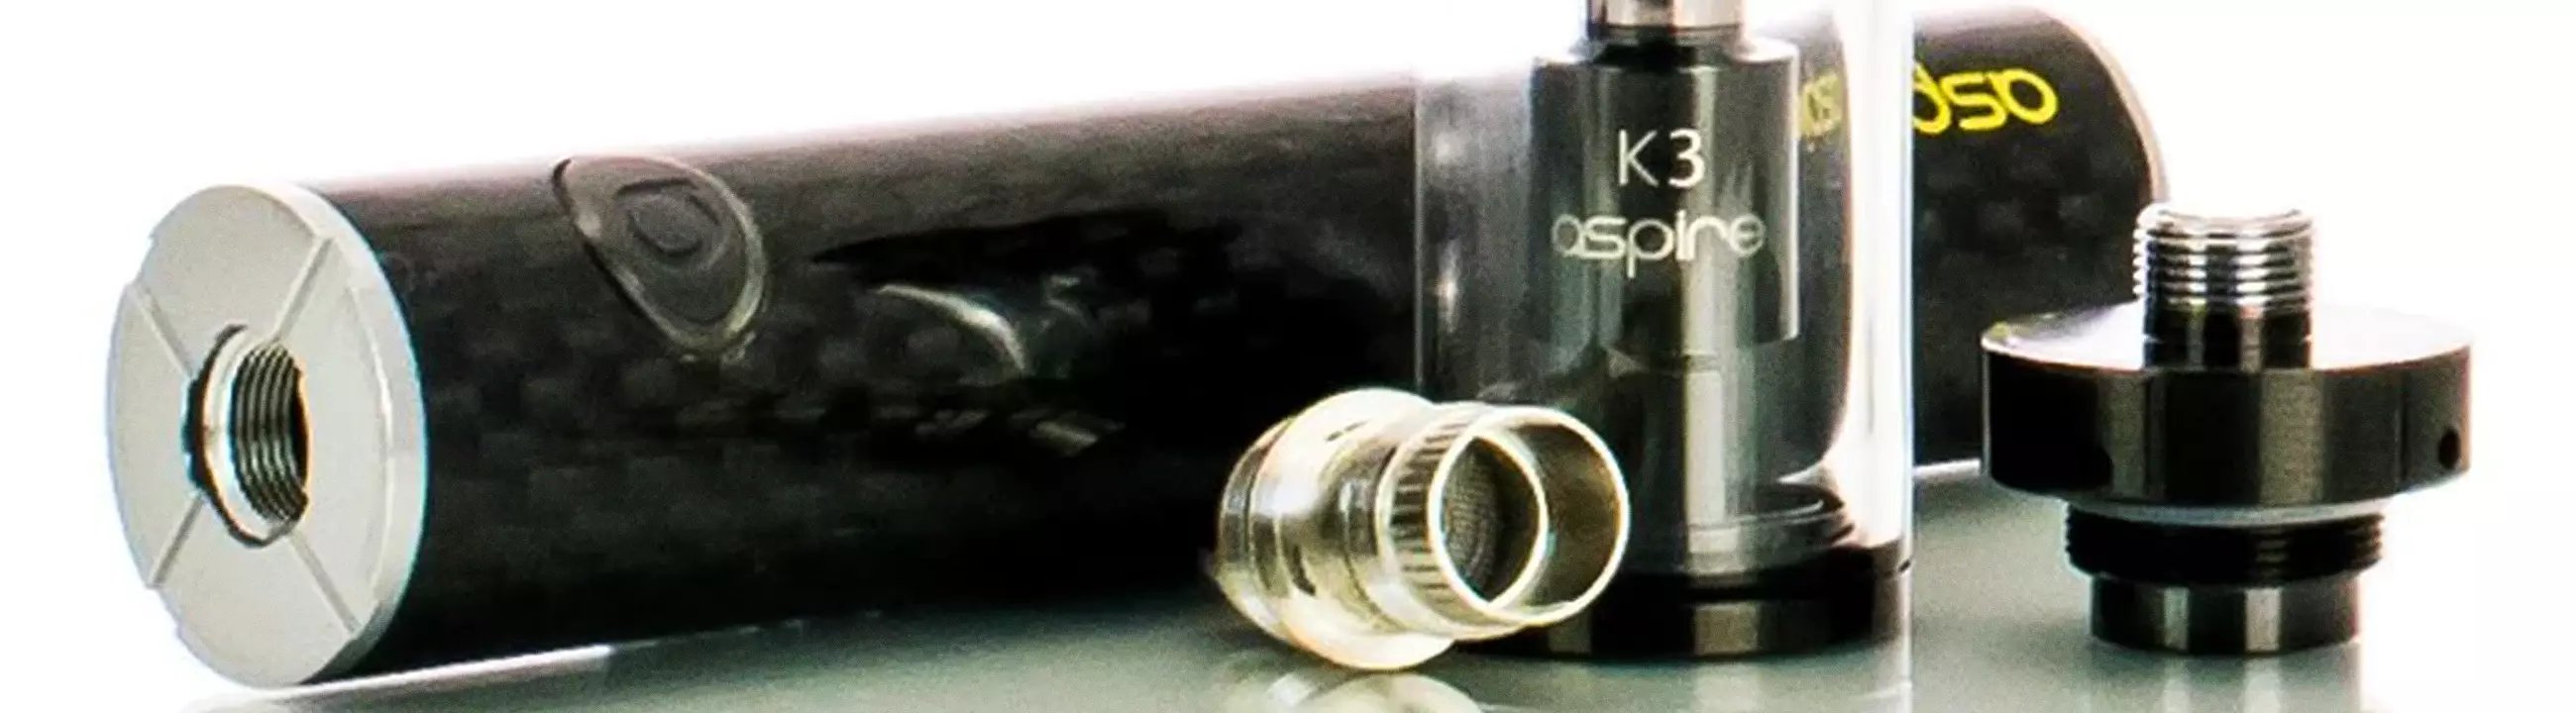 K3 Kit | Aspire Starter Kits | Buy Vape Devices Online